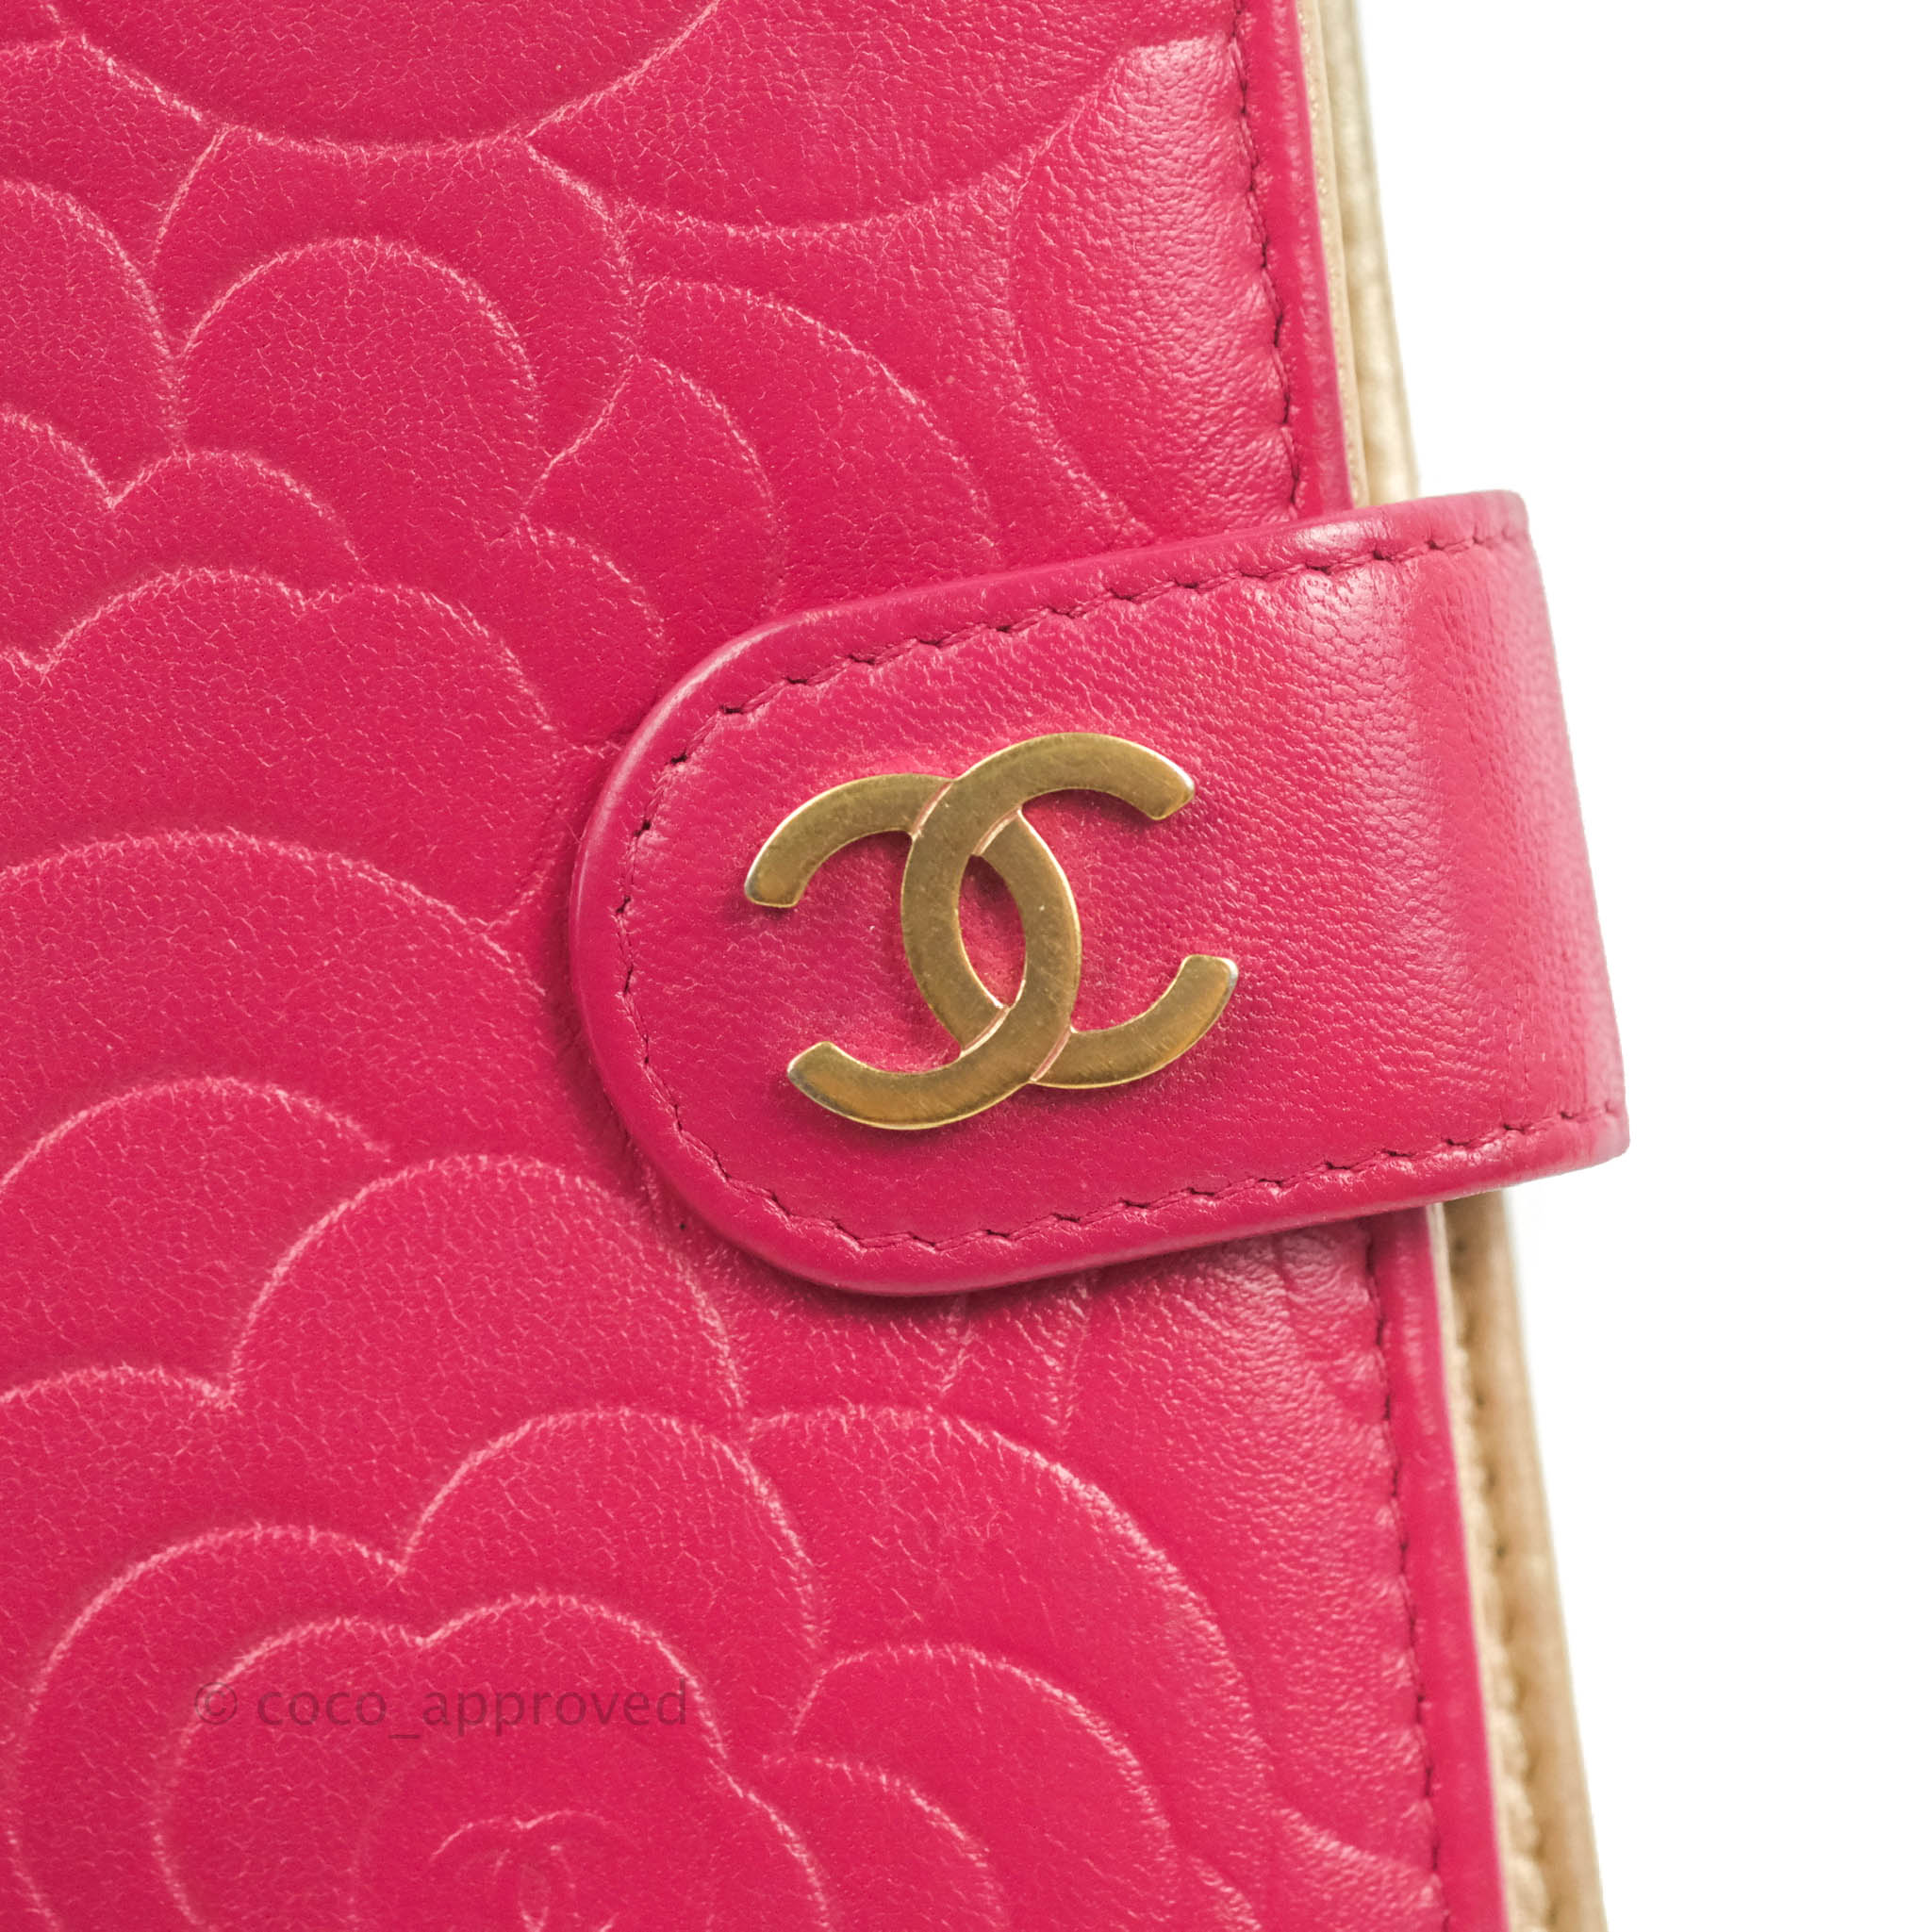 Chanel - Pink Calfskin Timeless 'CC' Compact Wallet